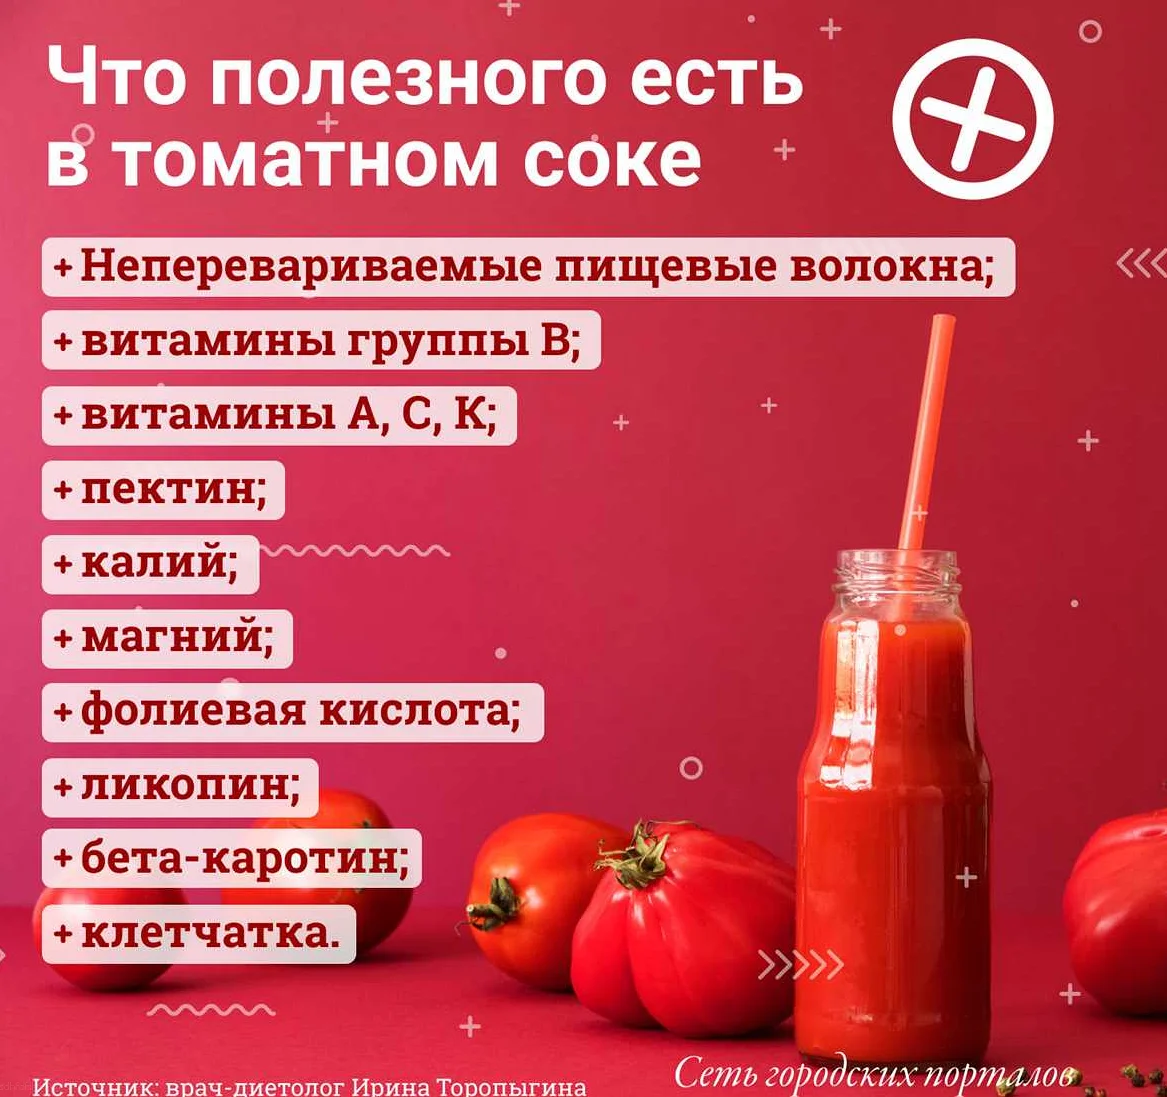 Противопоказания к употреблению томатного сока